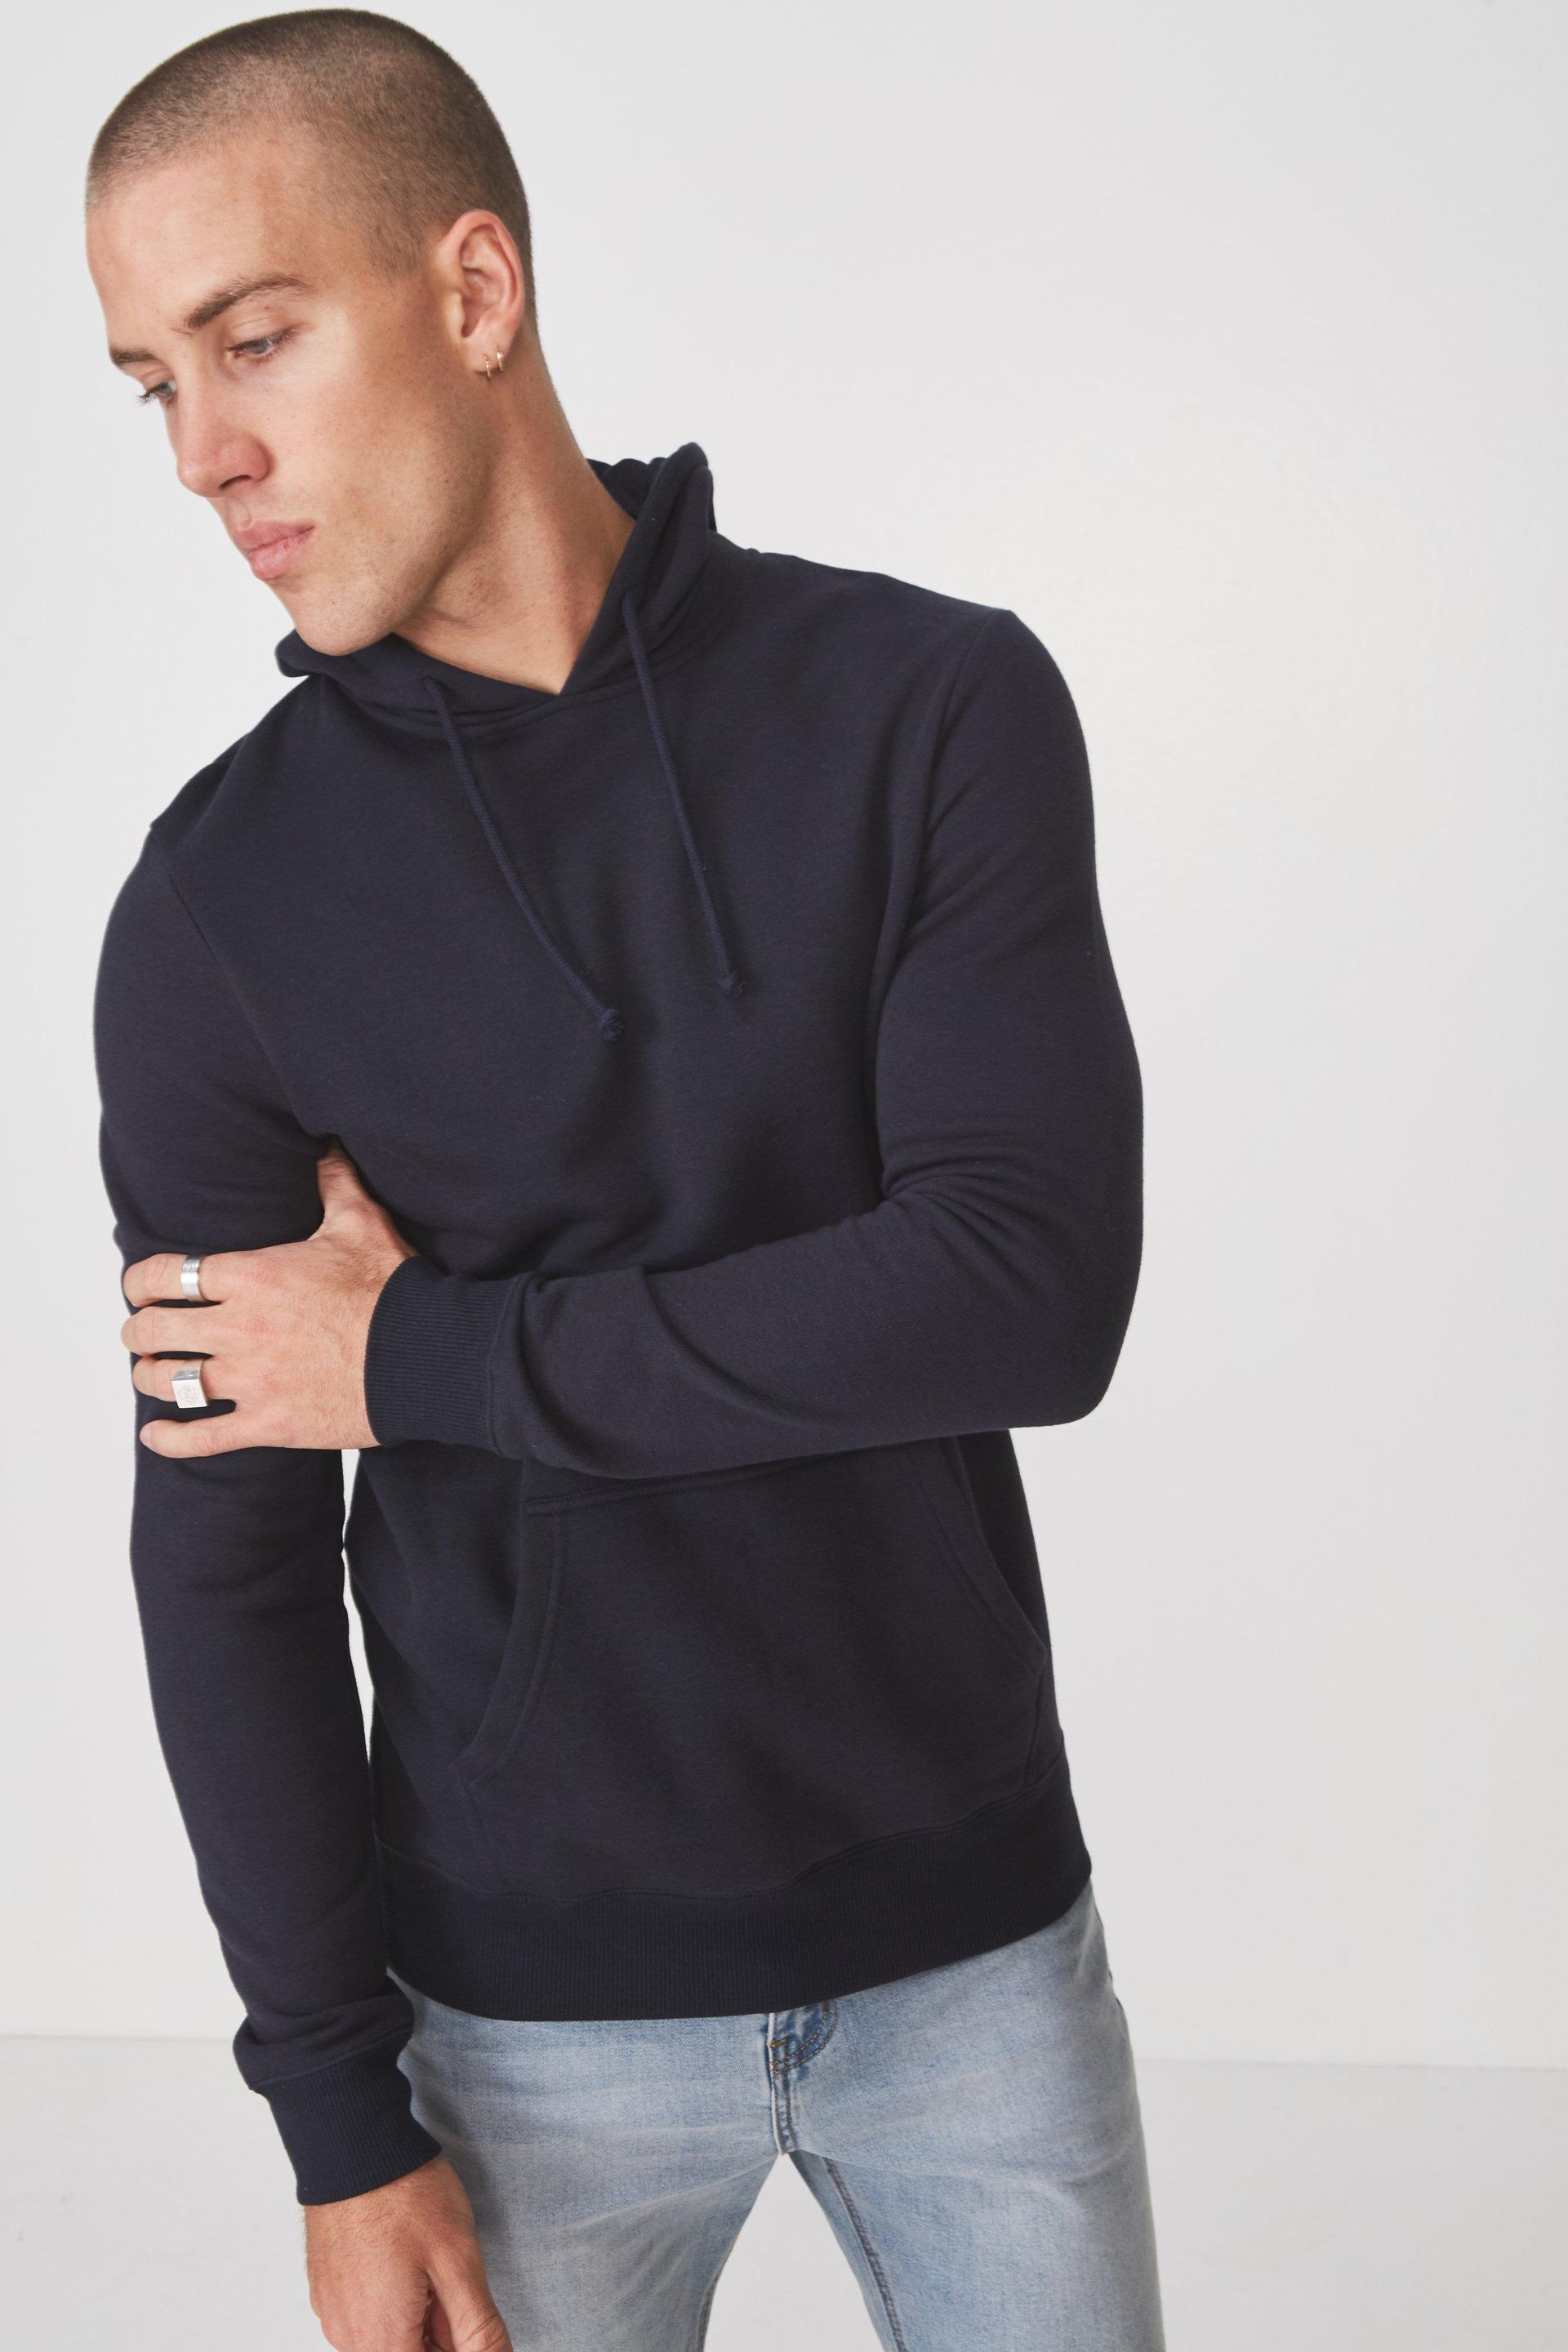 Fleece pullover - ink navy Cotton On Hoodies & Sweats | Superbalist.com